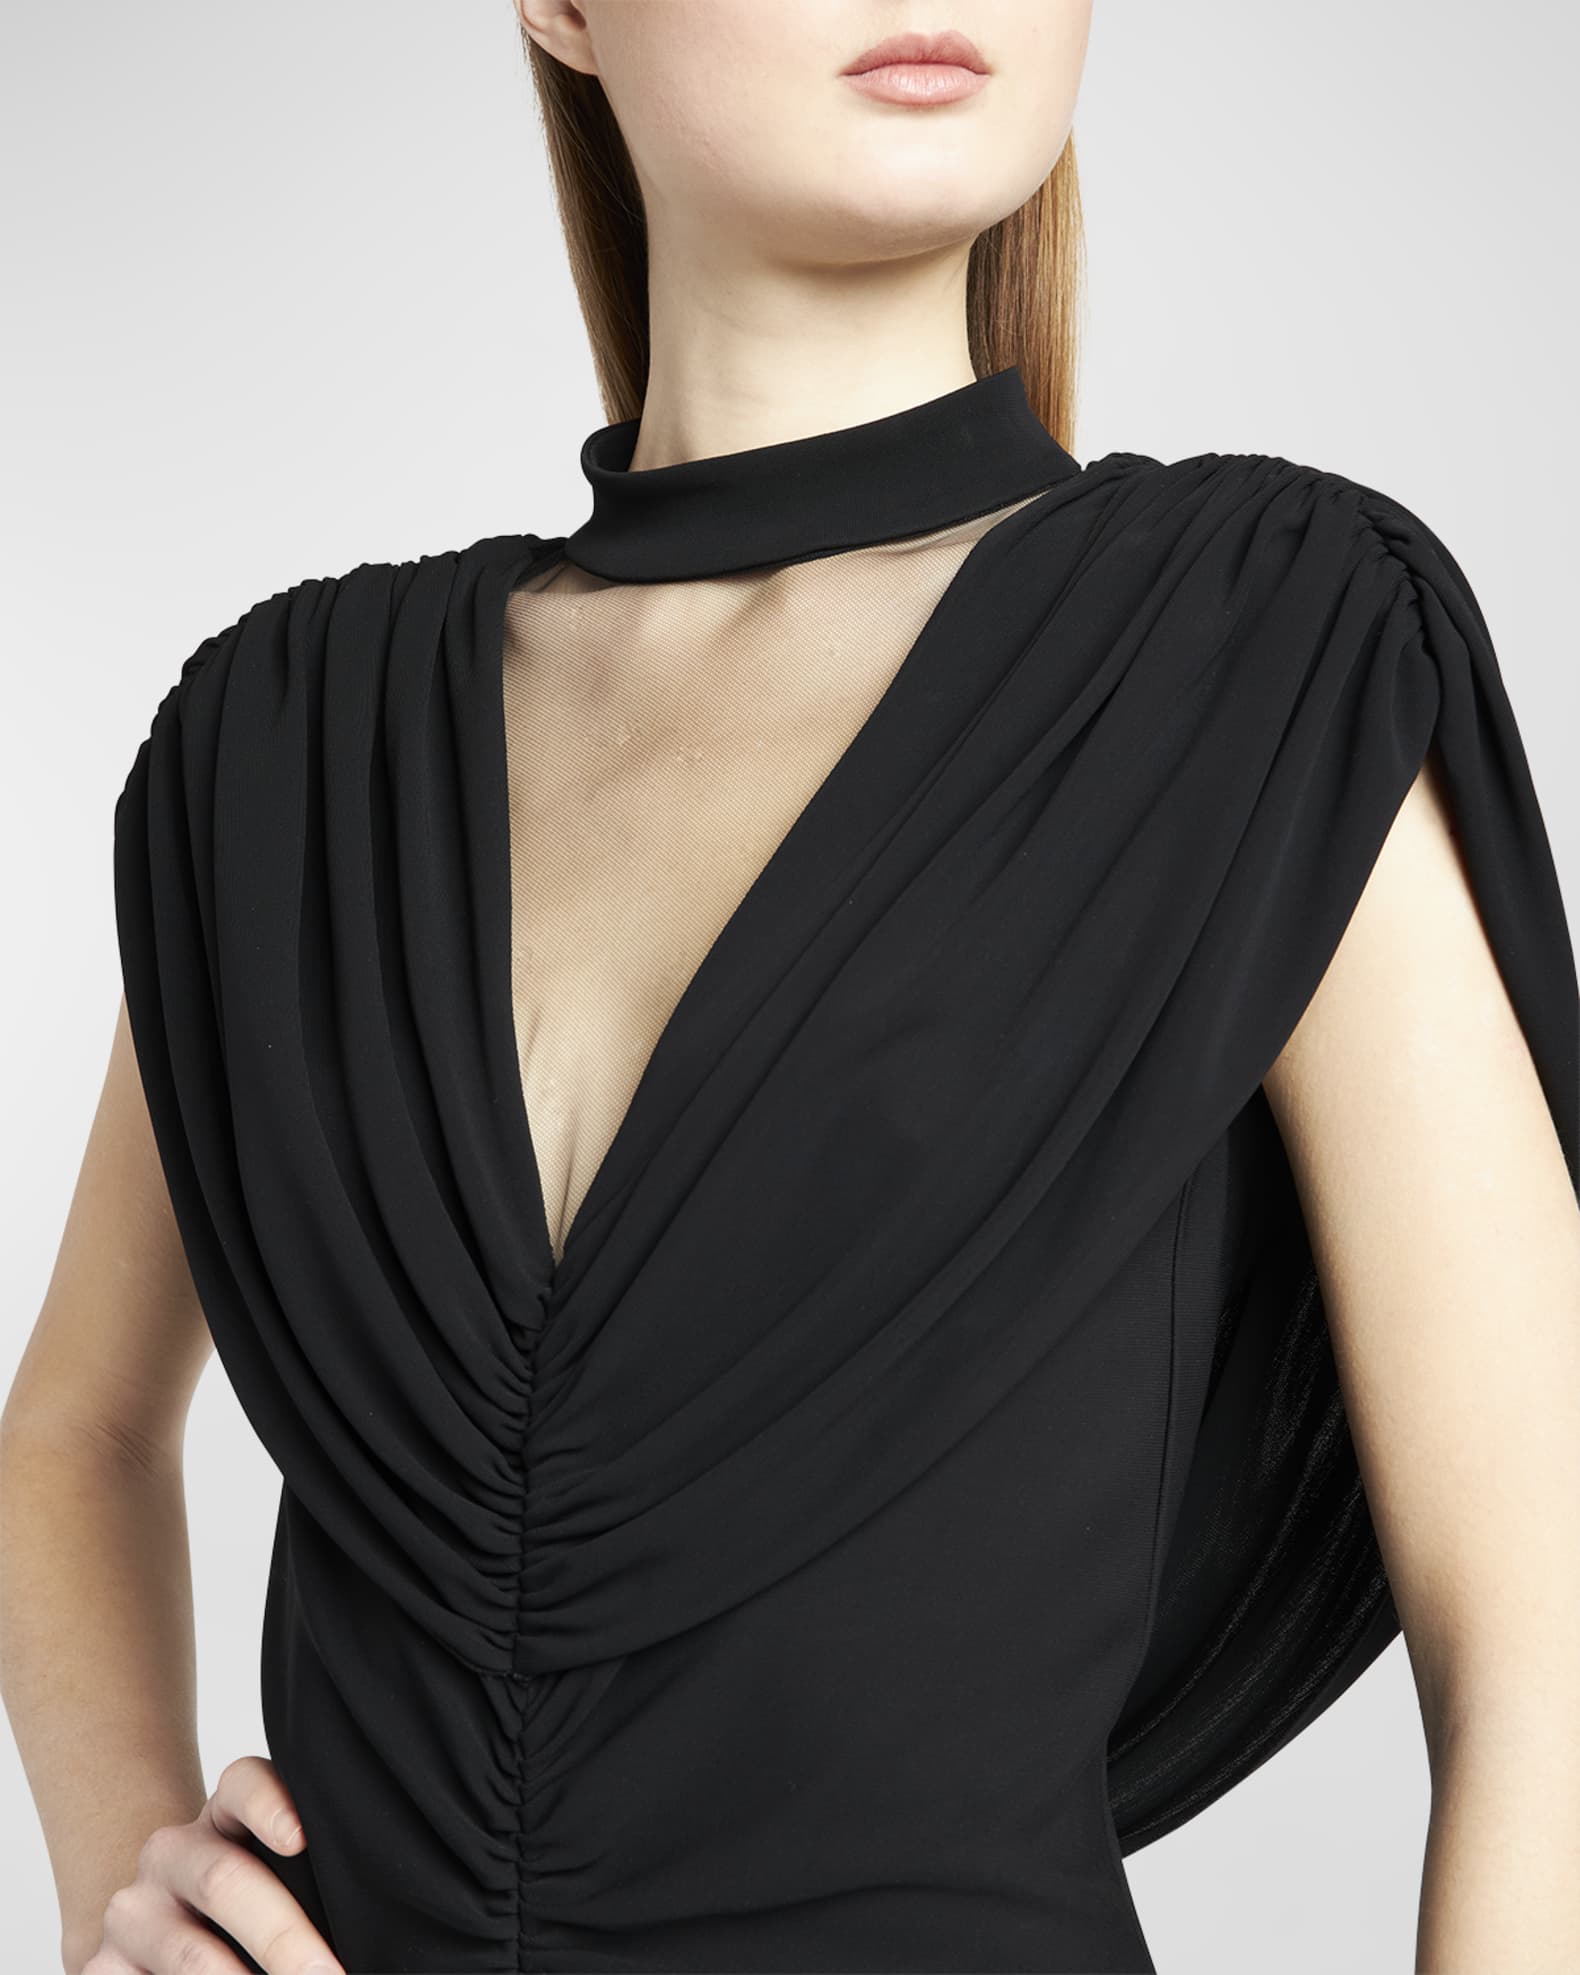 Alberta Ferretti Draped Open-Back Illusion Gown | Neiman Marcus